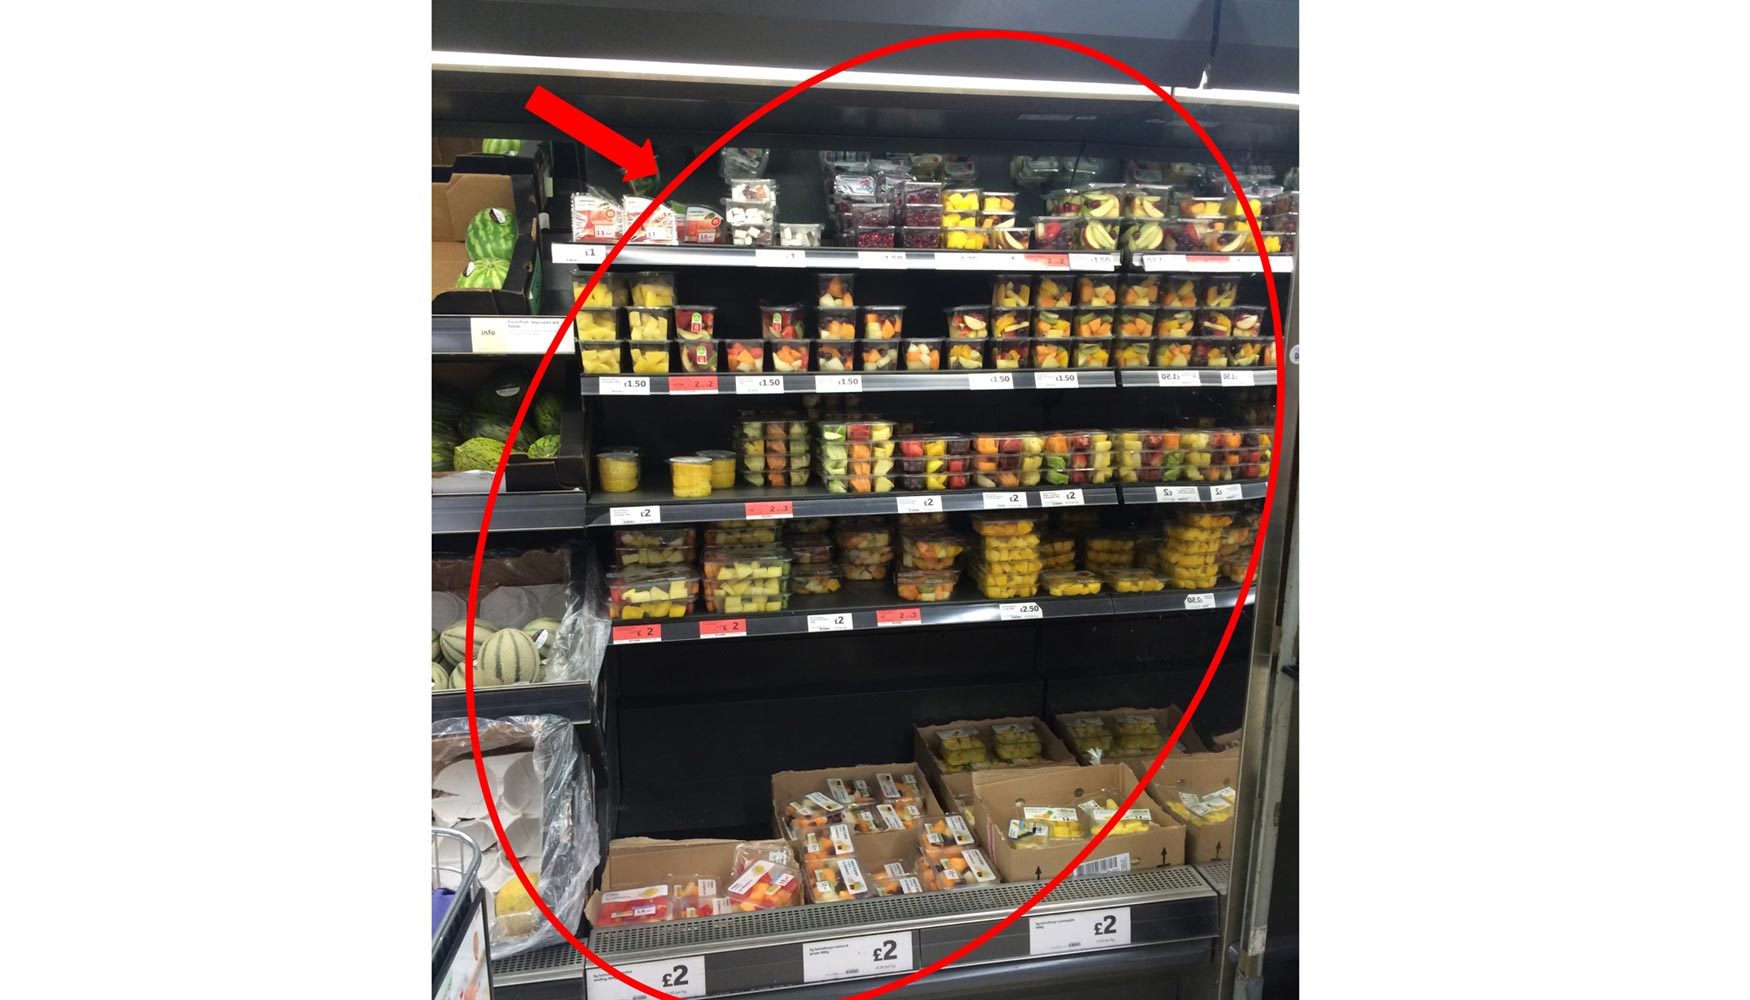 Oferta de fruta mnimamente procesada en un supermercado del Reino Unido. Fotografa: Anthony Nicolson...